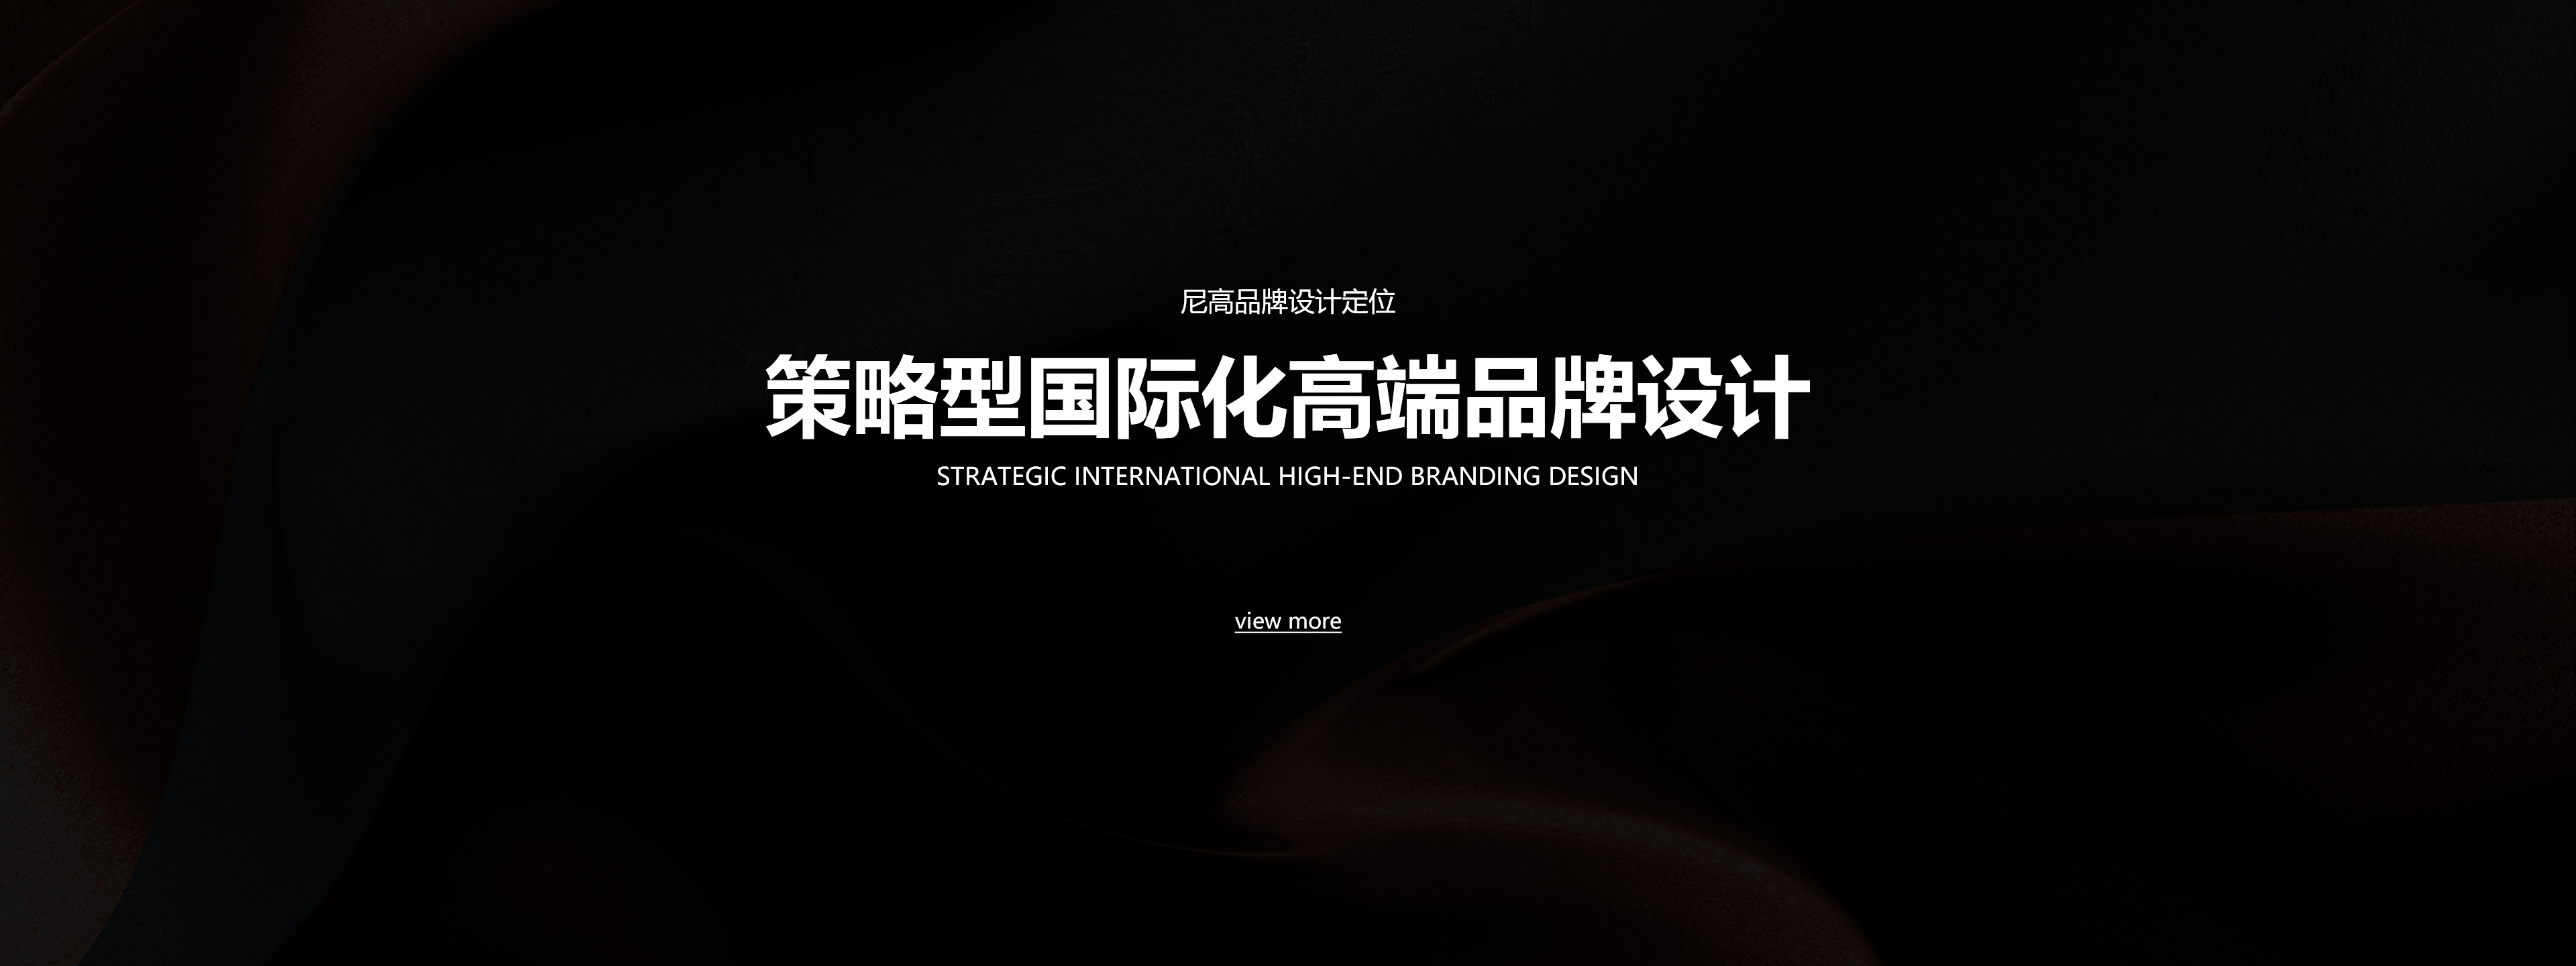 尼高品牌设计公司-VI设计公司-深圳logo设计-企业形象设计公司 image